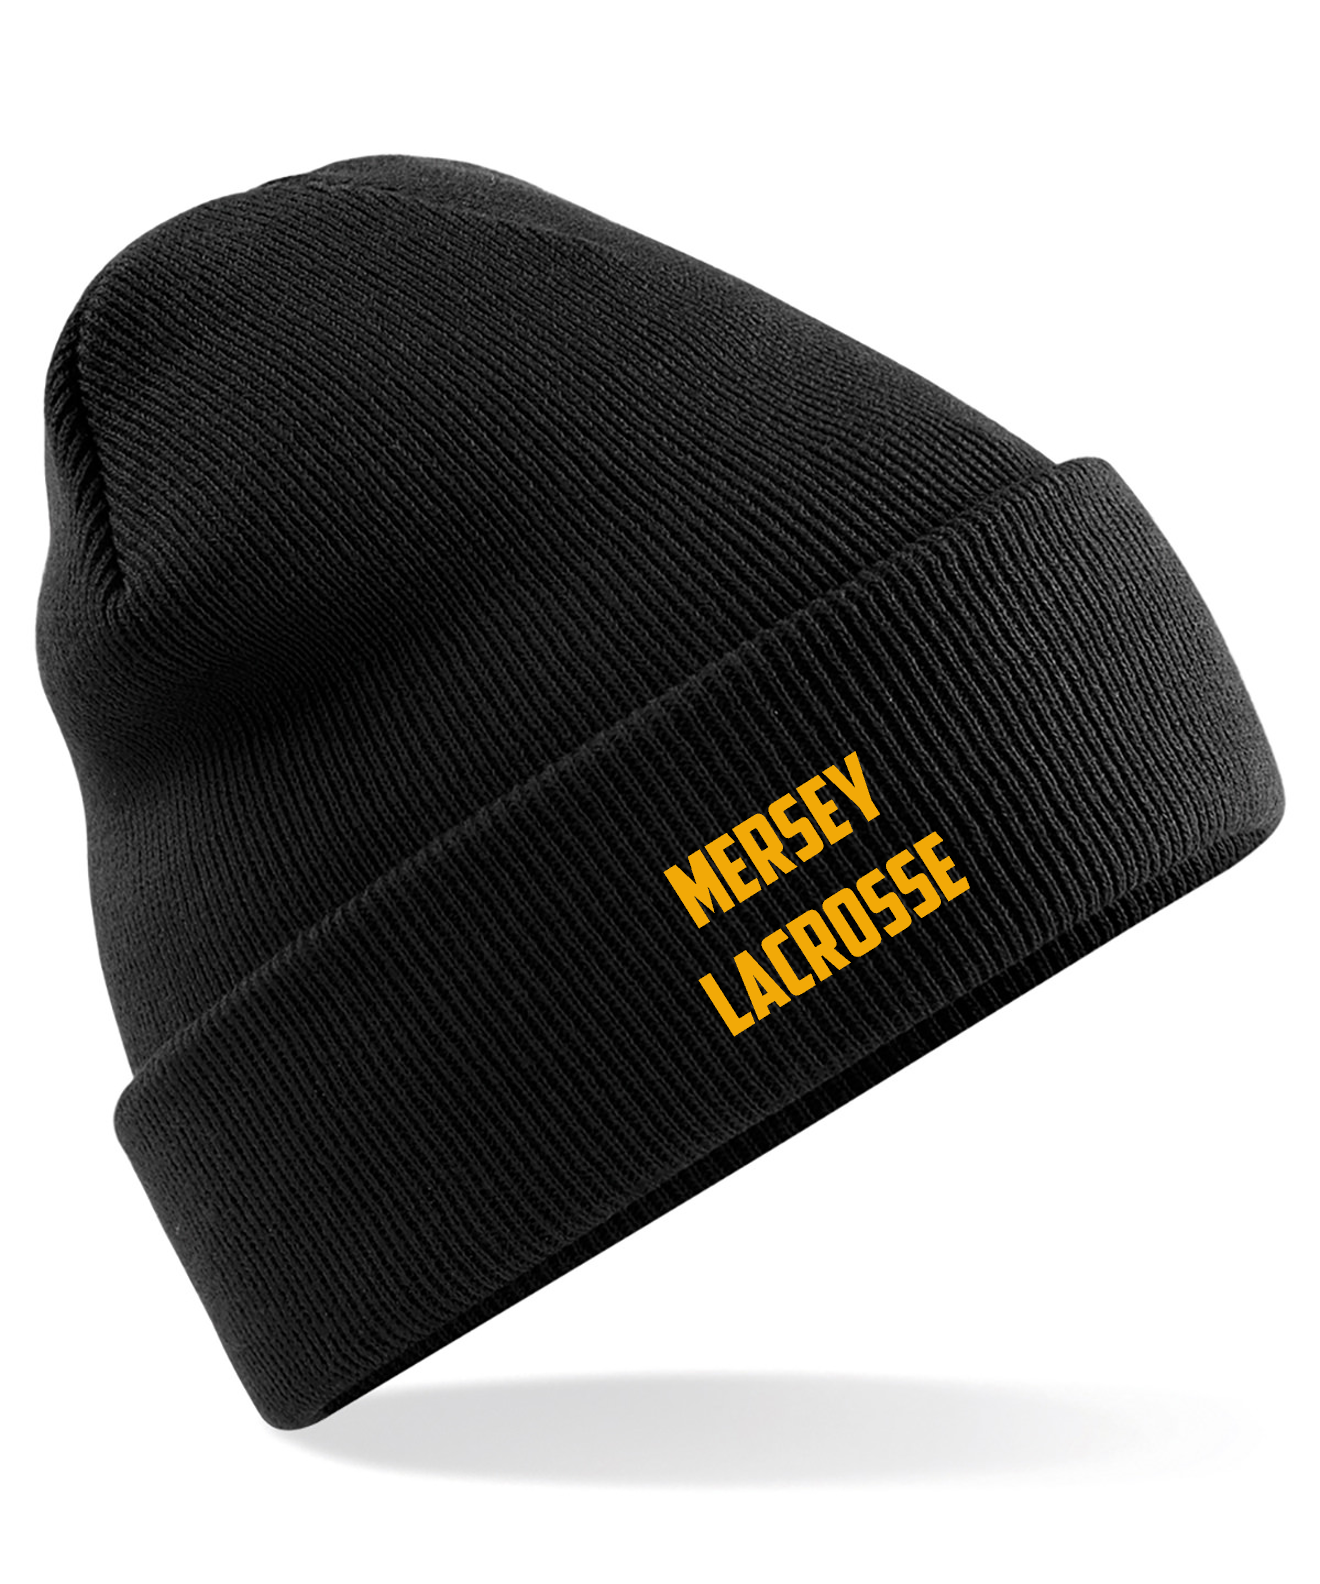 Heaton Mersey LC Beanie Hat